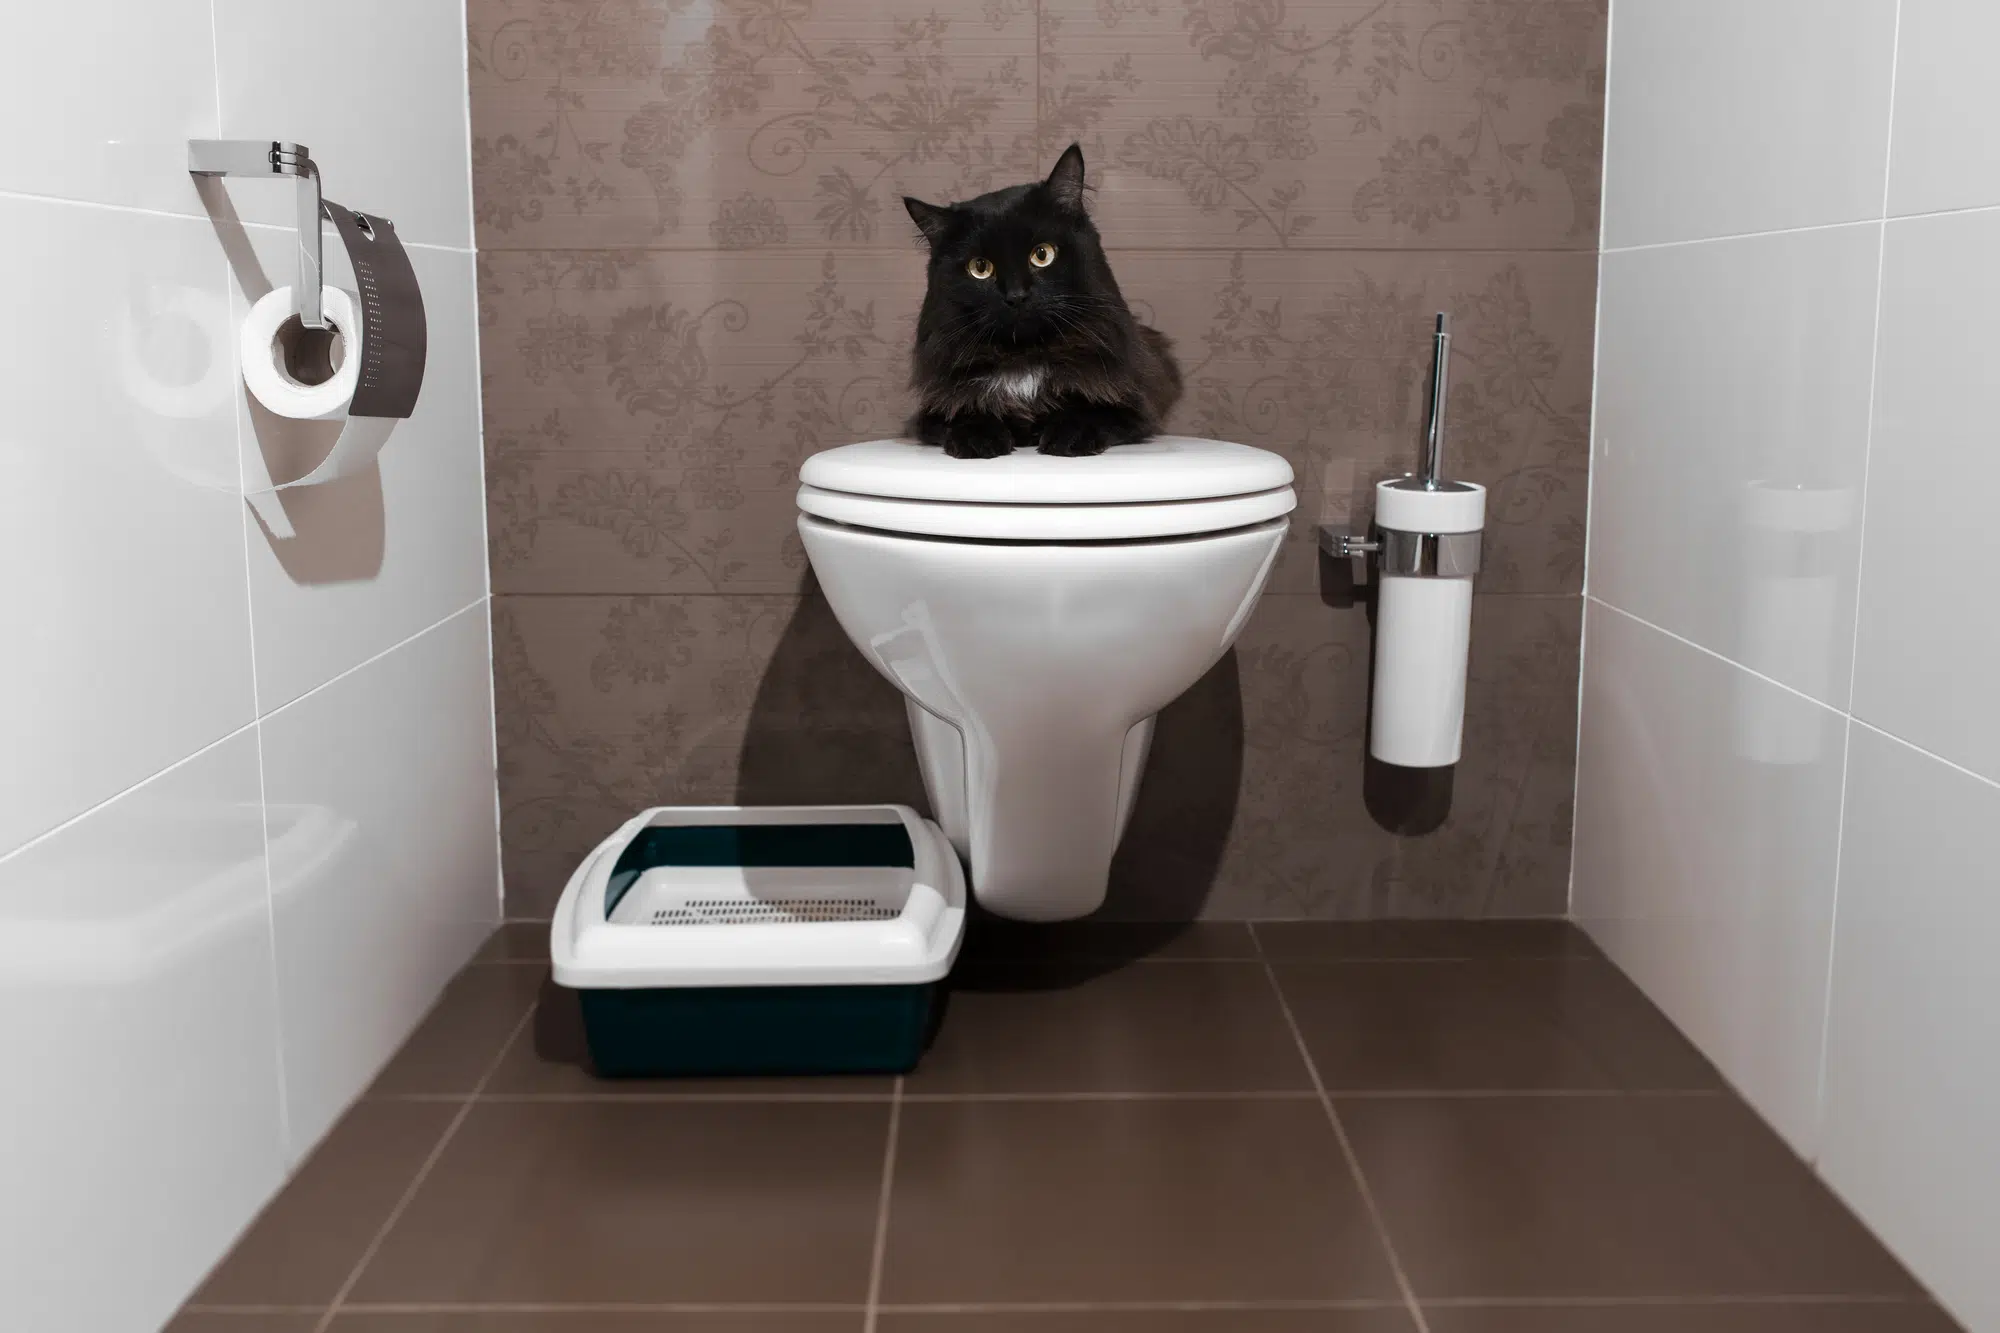 Cute kitten in the toilet